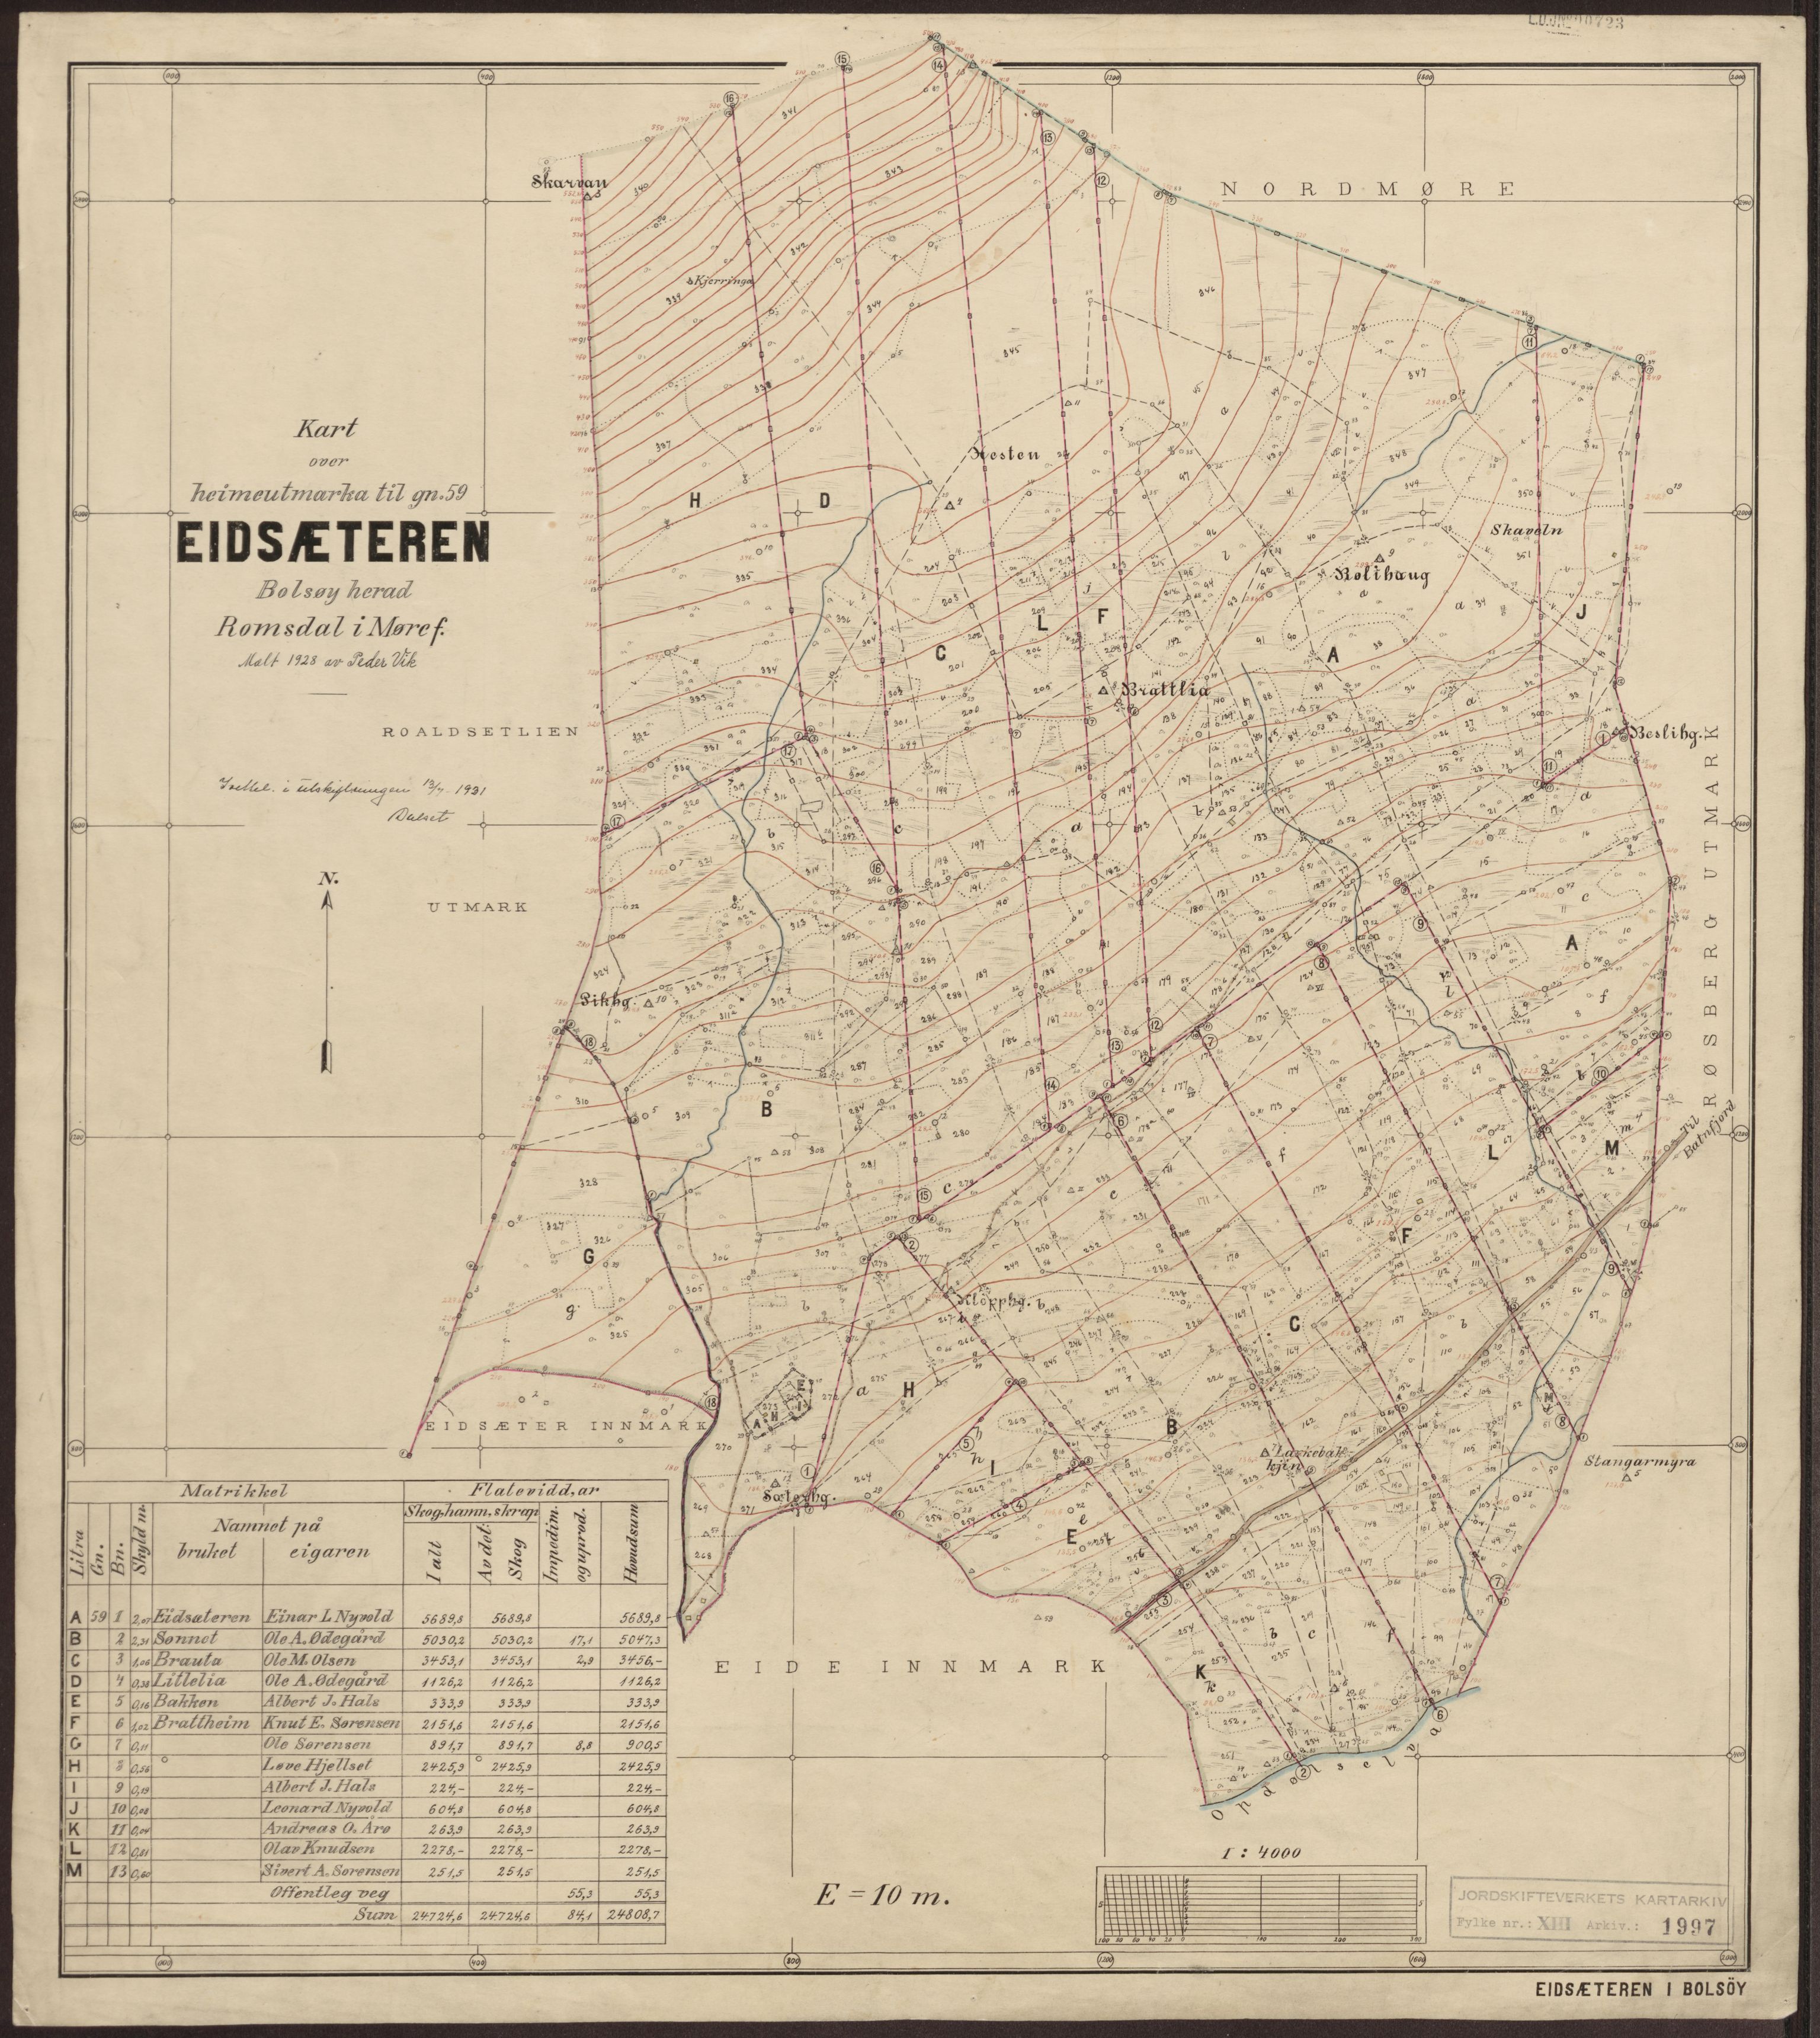 Jordskifteverkets kartarkiv, RA/S-3929/T, 1859-1988, s. 2430